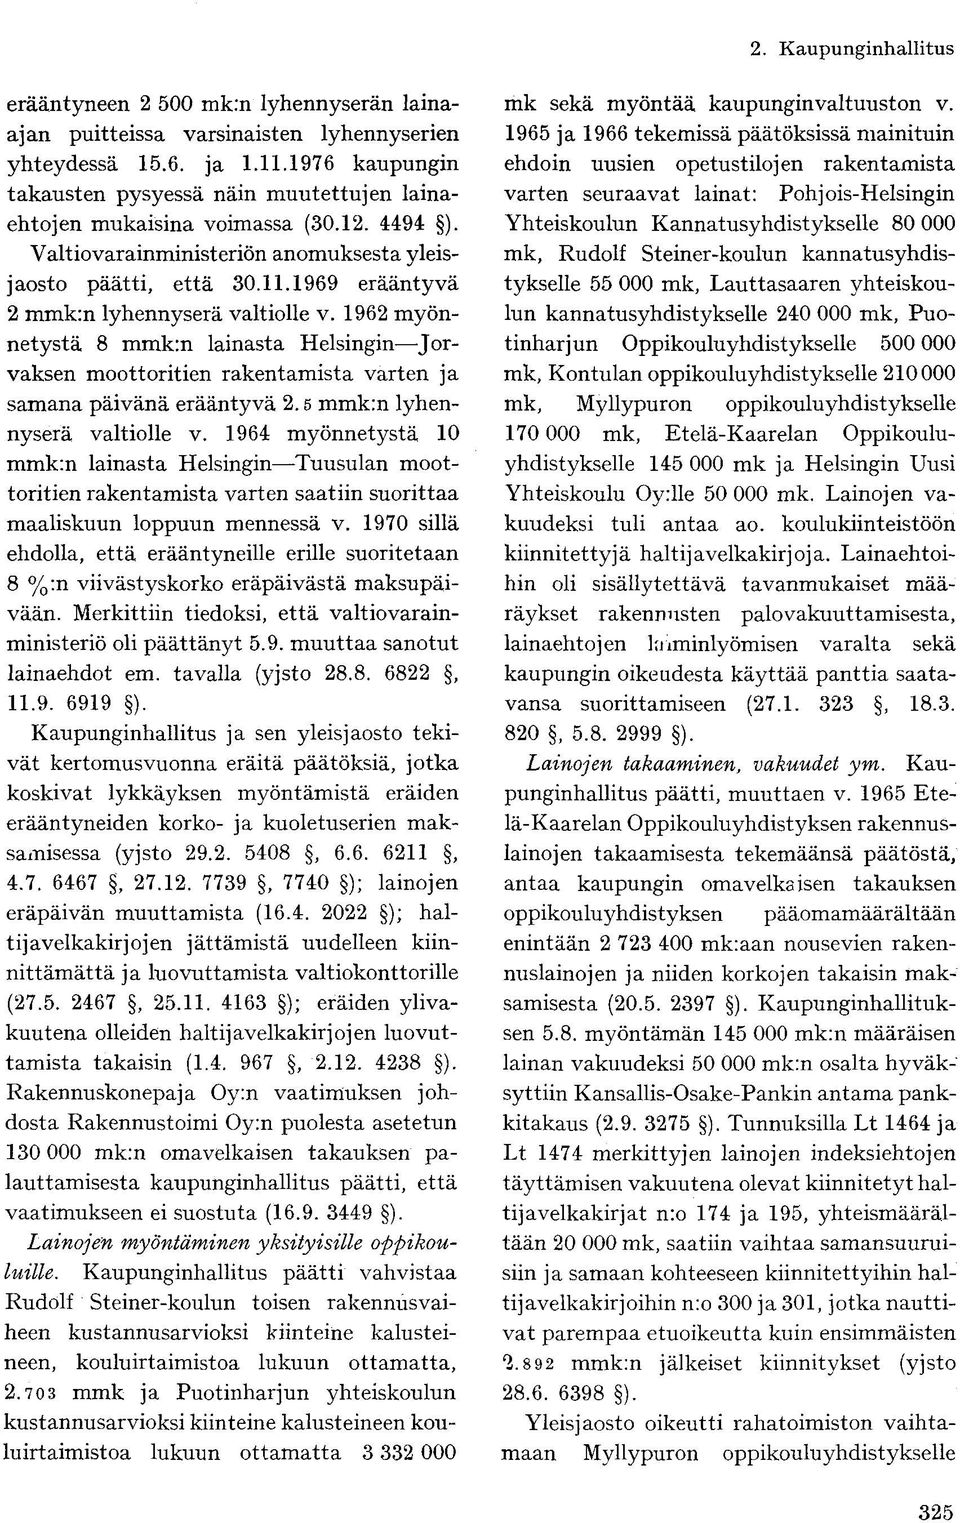 1962 myönnetystä 8 mmk:n lainasta Helsingin Jorvaksen moottoritien rakentamista varten ja samana päivänä erääntyvä 2.5 mmk:n lyhennyserä valtiolle v.